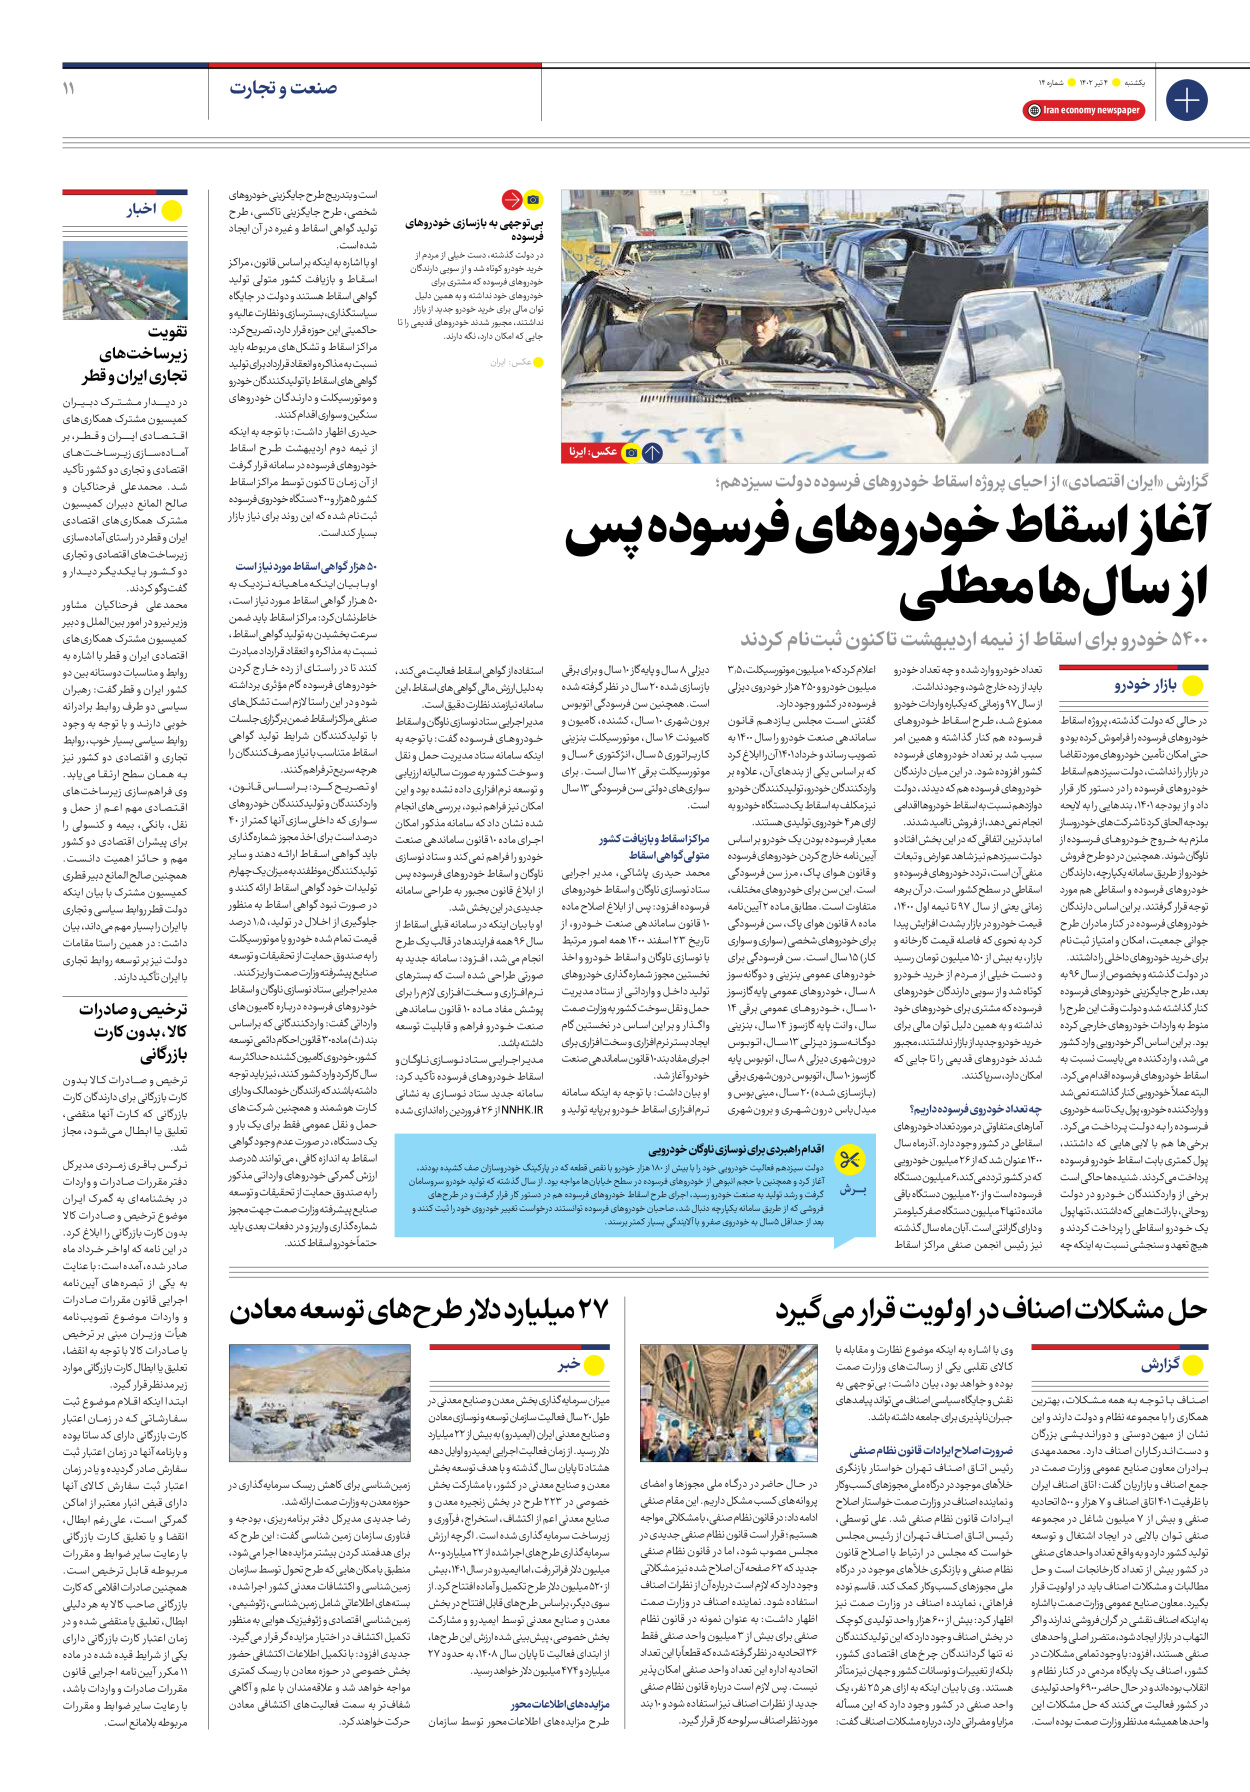 روزنامه ایران اقتصادی - شماره چهارده - ۰۴ تیر ۱۴۰۲ - صفحه ۱۱